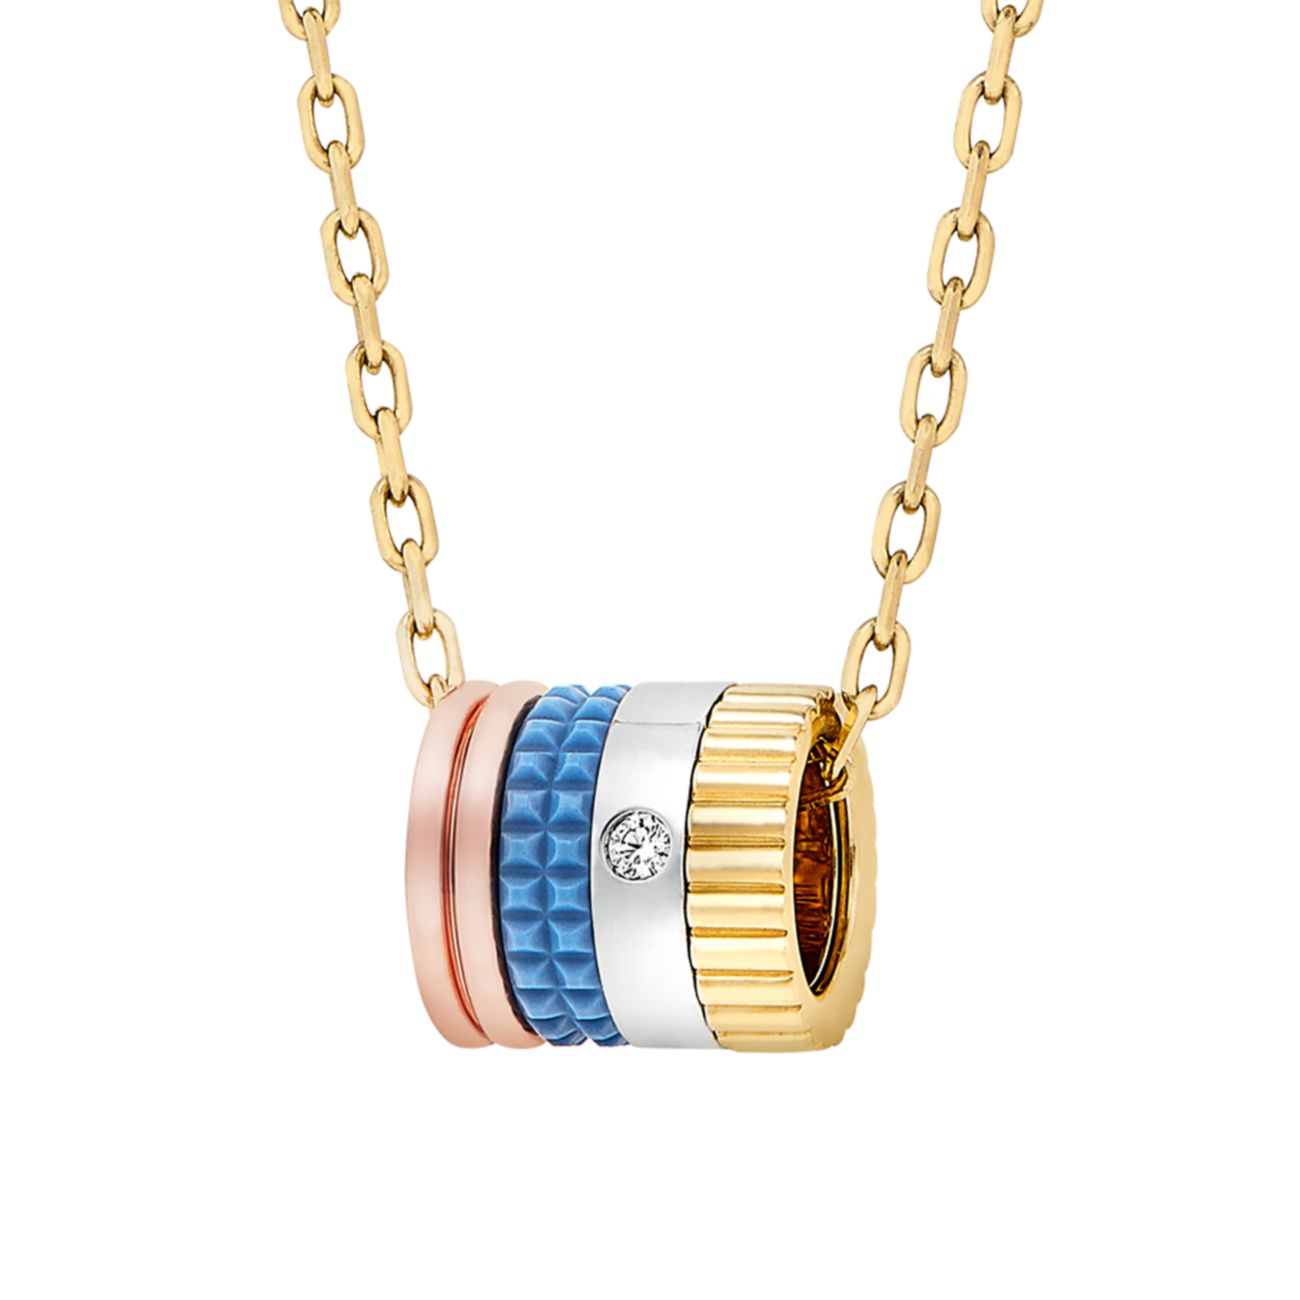 Quatre Blue Edition, трехцветное золото 18 карат, бриллианты и бриллианты; Синее керамическое мини-ожерелье с подвеской Boucheron